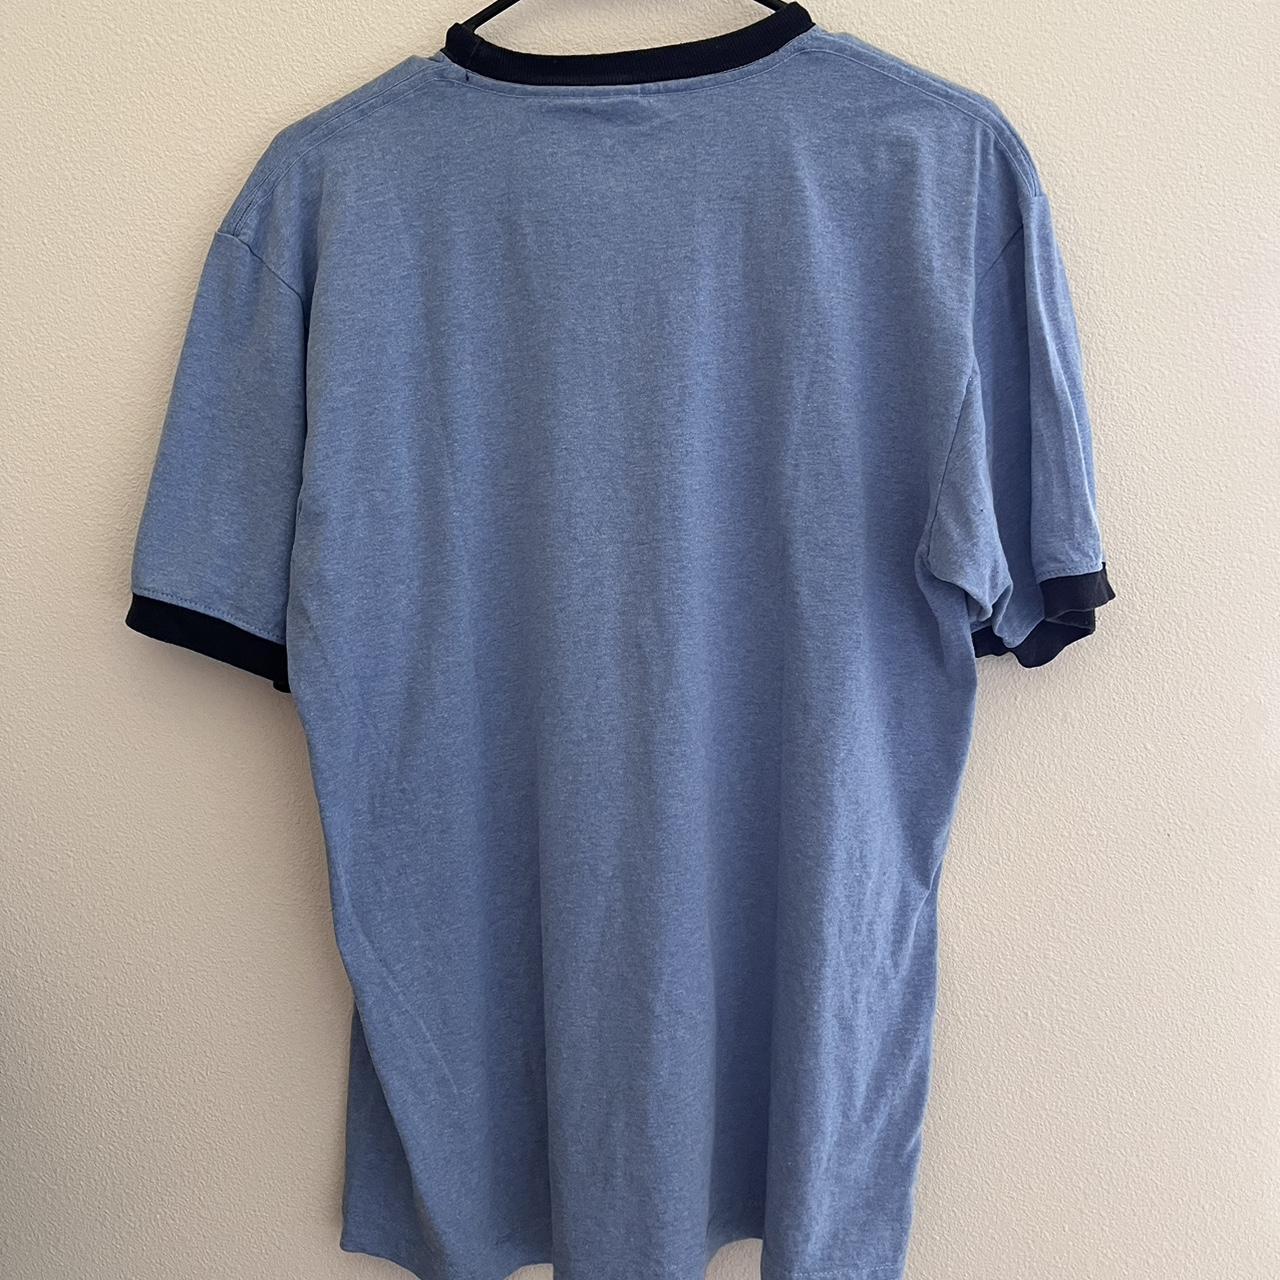 Bugle Boy Men's Navy and Blue T-shirt (4)